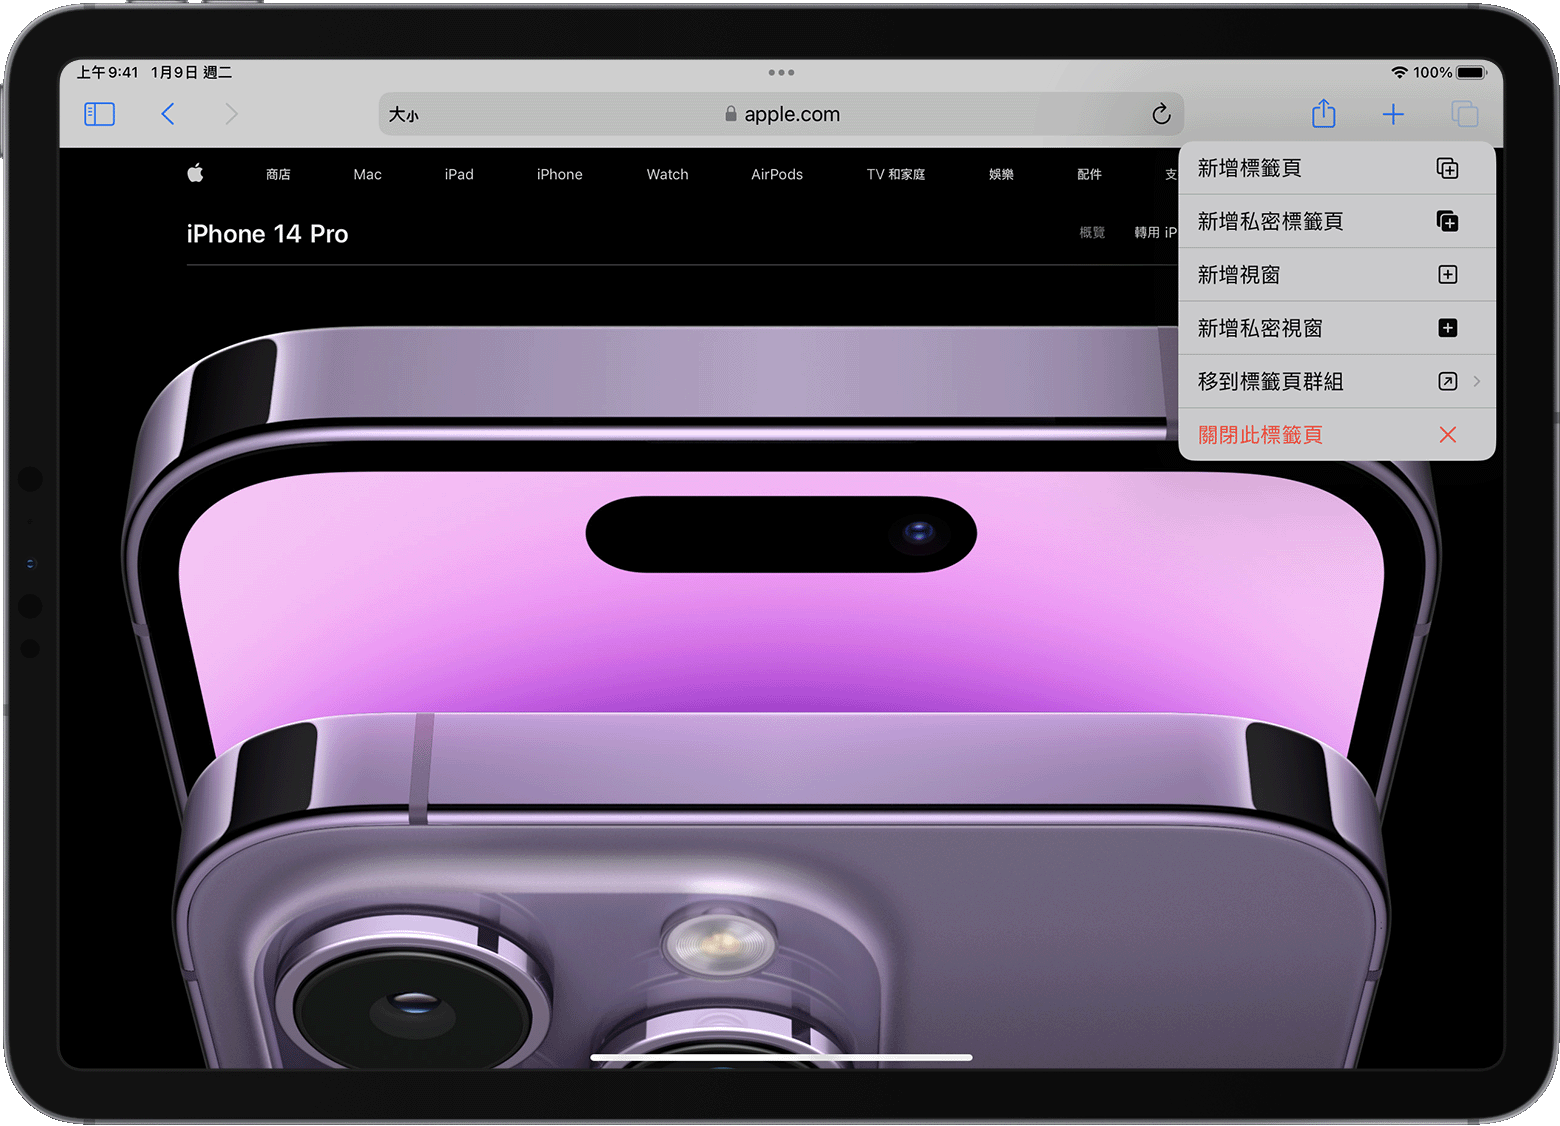 iPad 顯示 Safari 的標籤頁選項選單已開啟